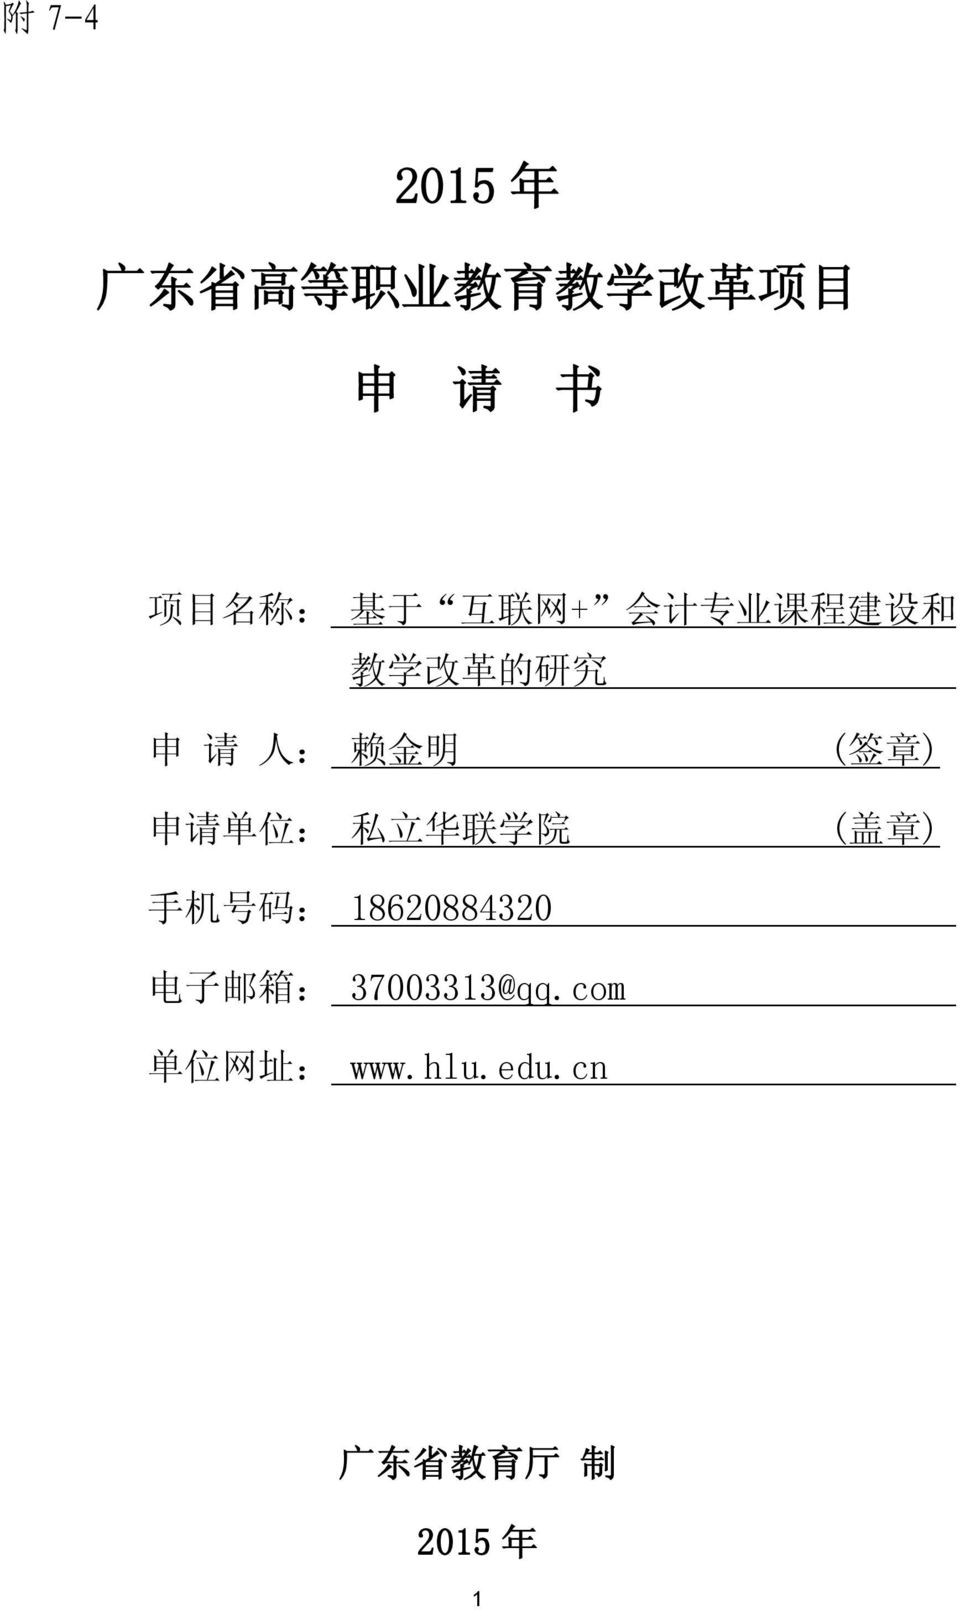 申 请 单 位 : 私 立 华 联 学 院 ( 盖 章 ) 手 机 号 码 : 18620884320 电 子 邮 箱 :